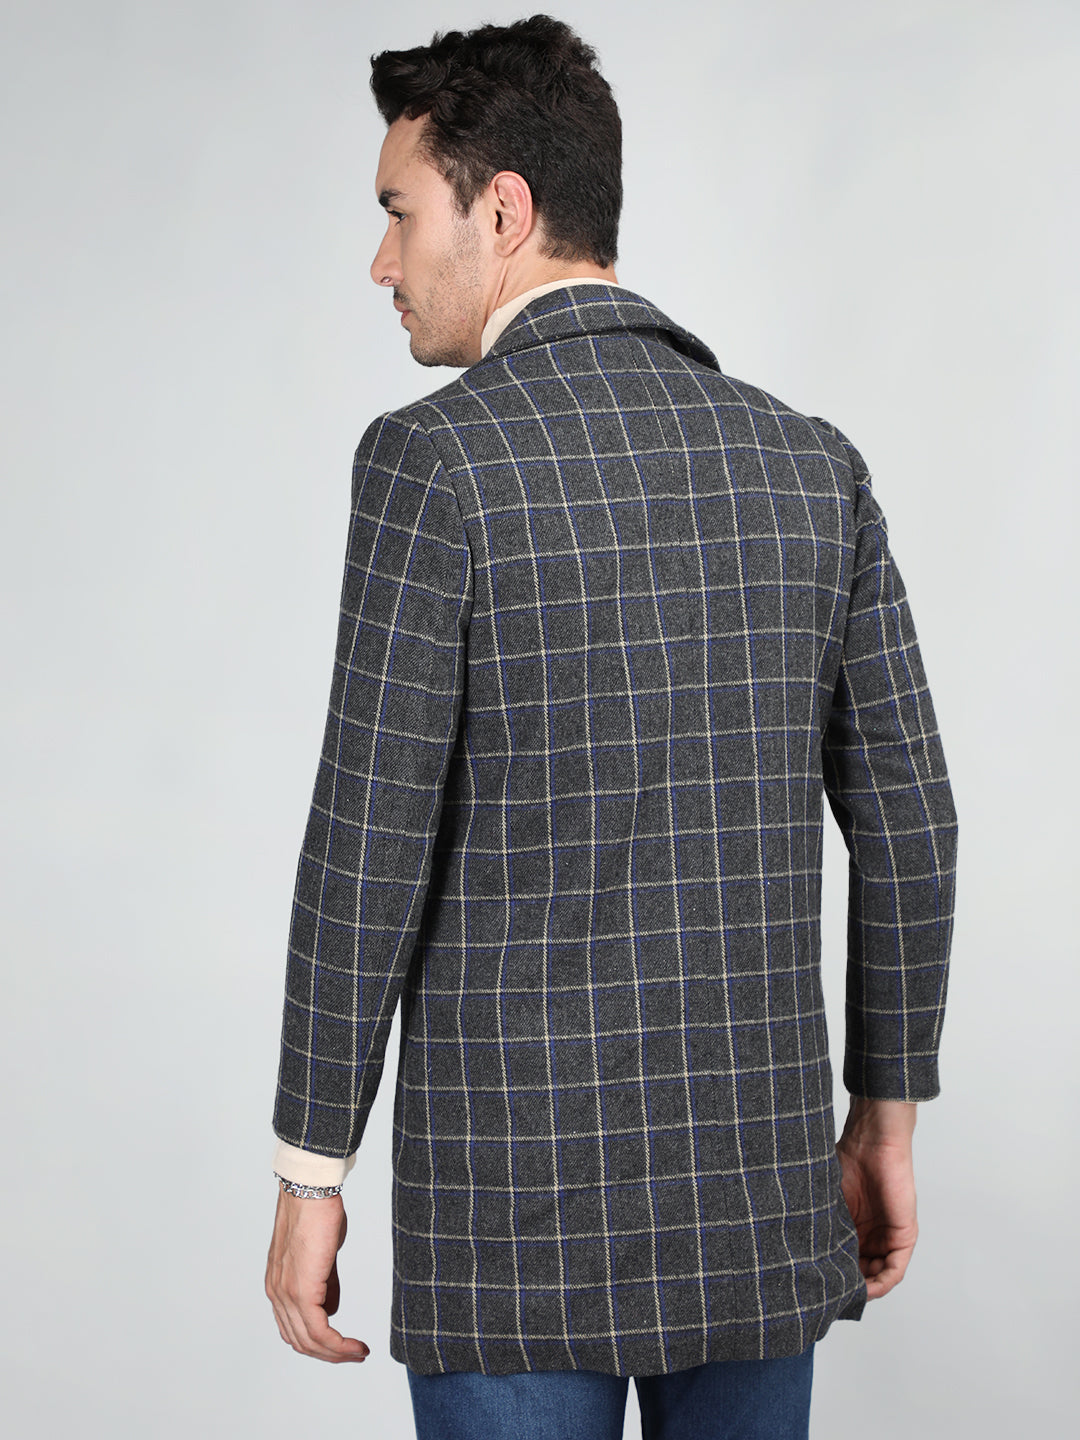 Men Checked Notched Lapel Tweed Woolen Longline Overcoat